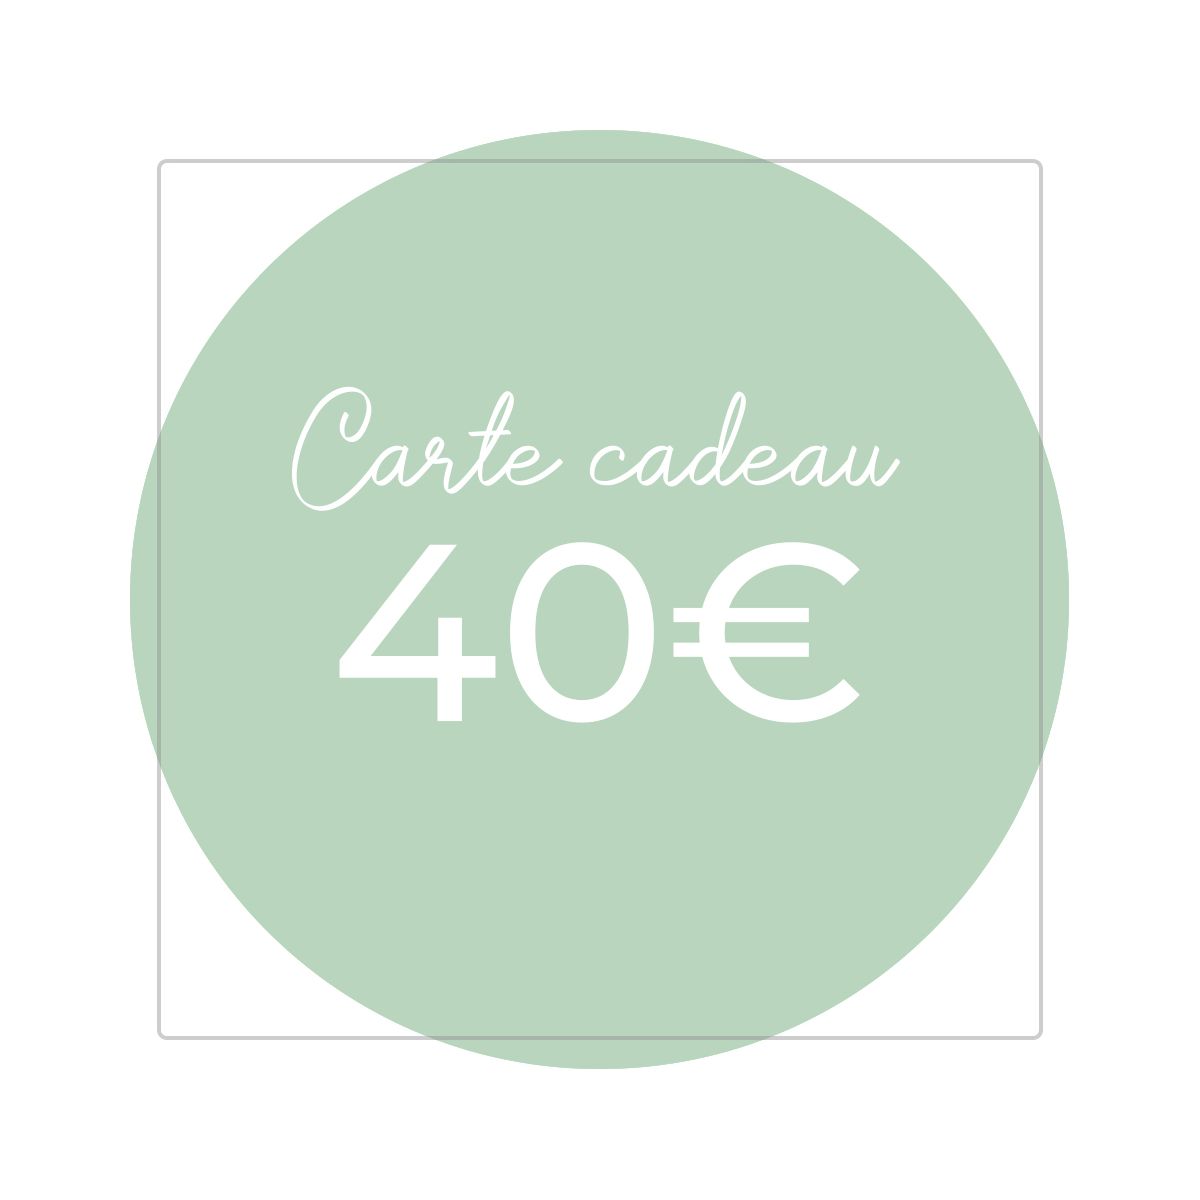 Carte cadeau 40€ - Version numérique